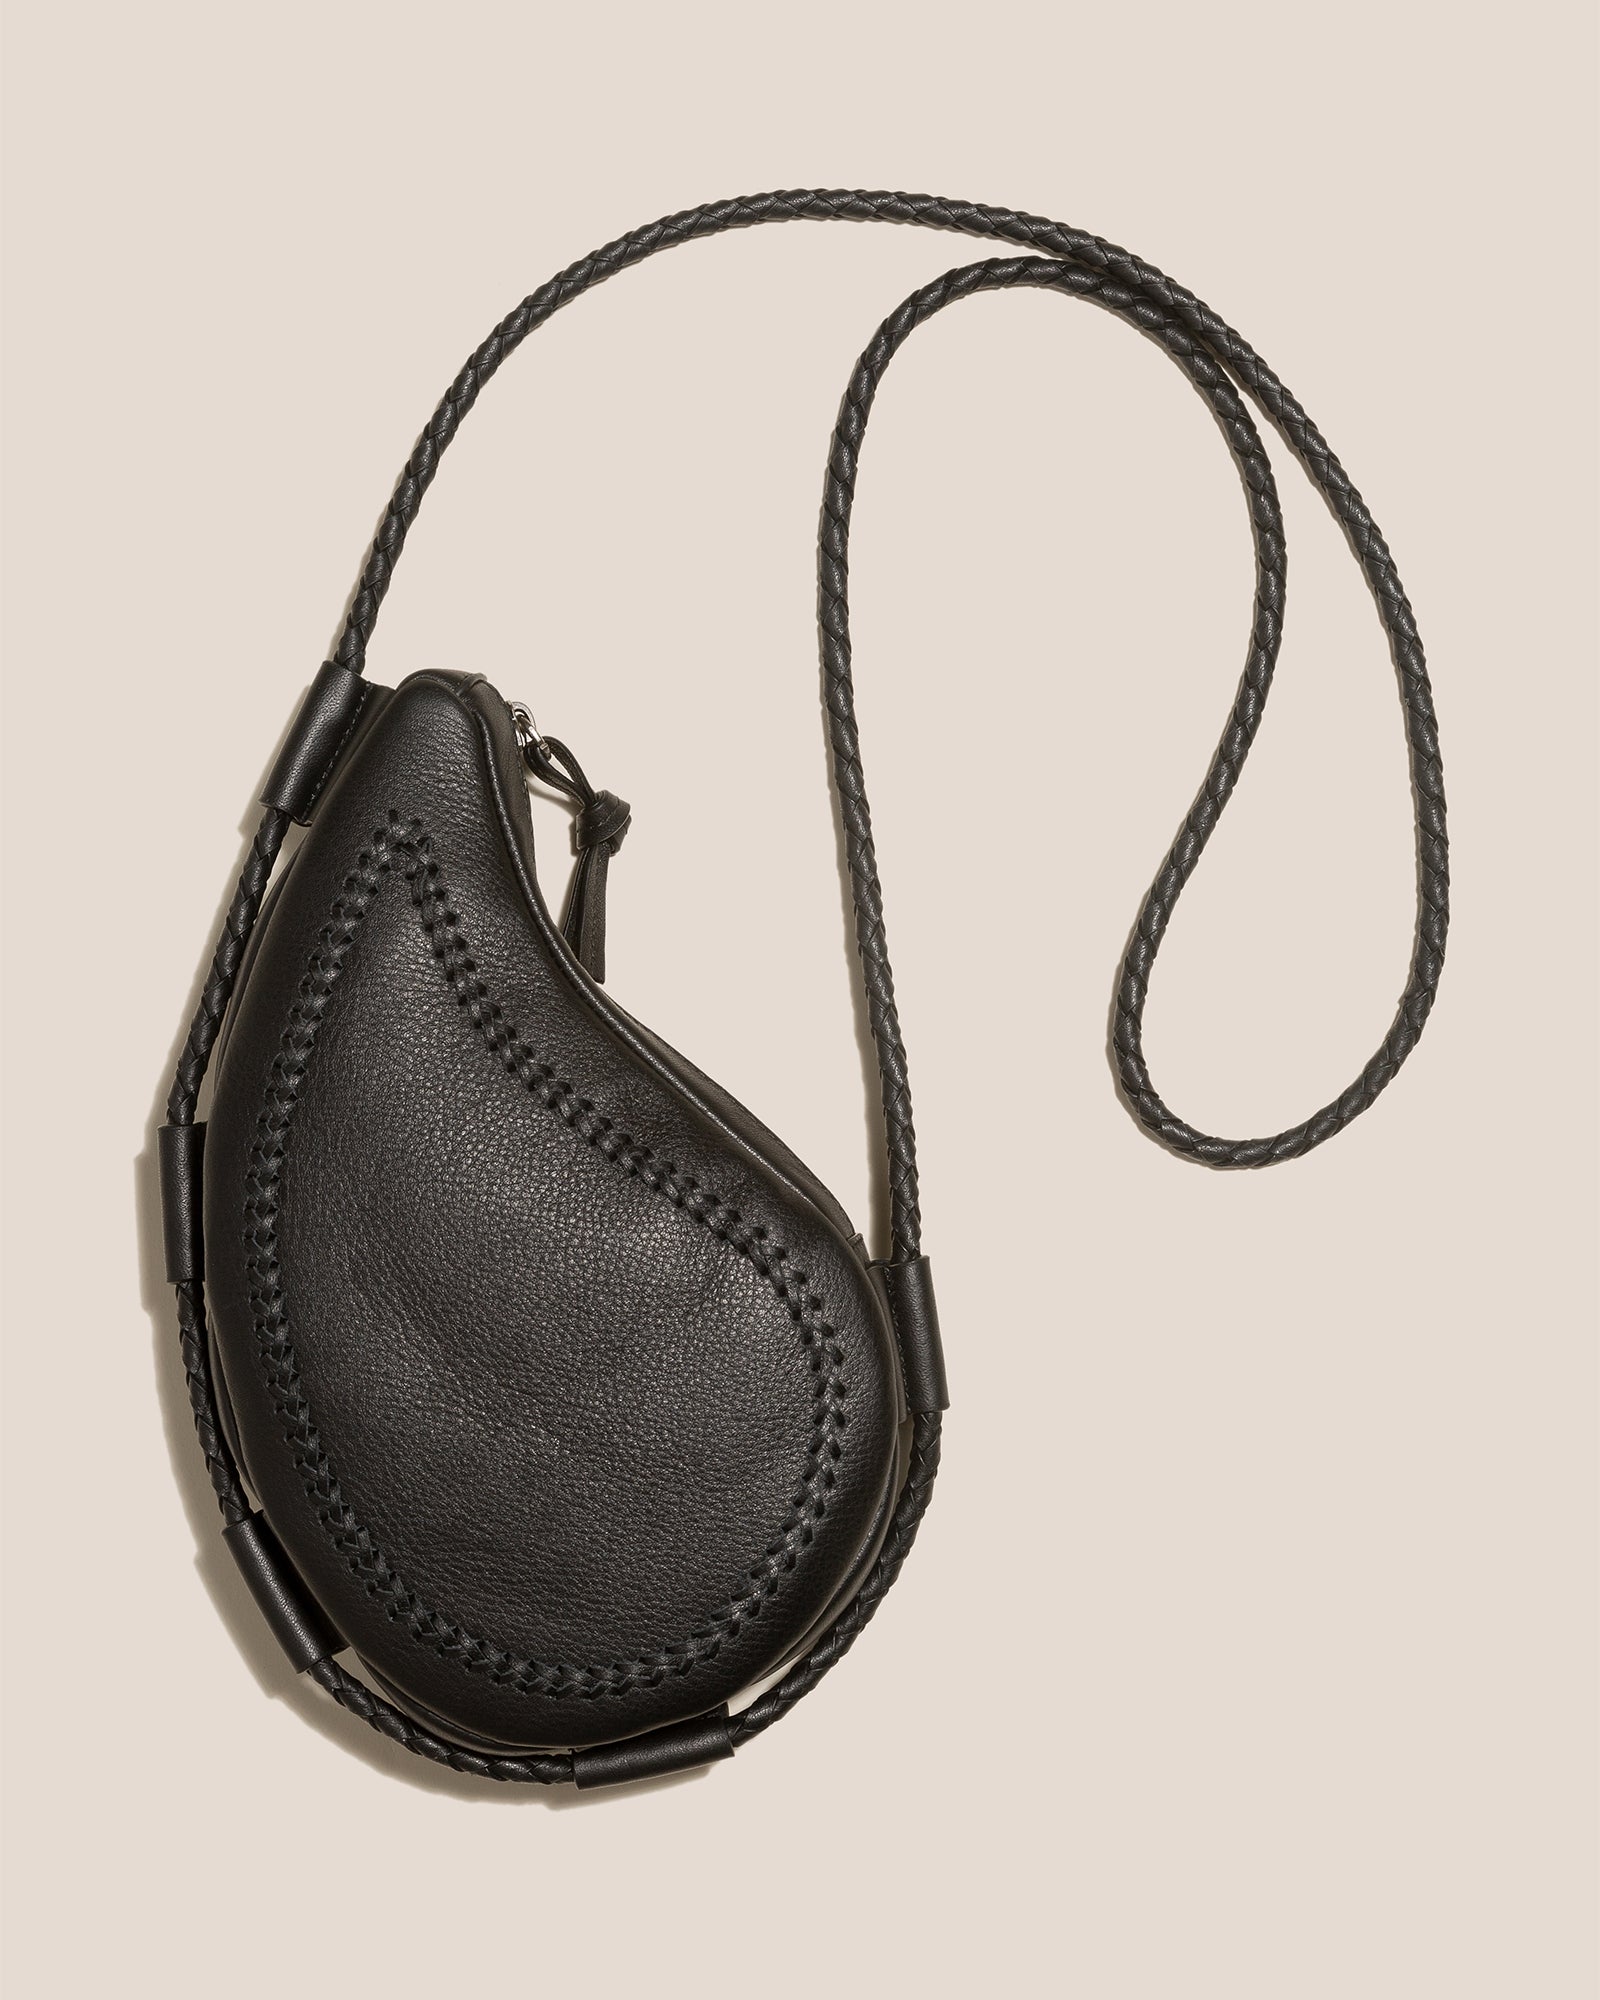 Repurposed Saddle Bag – Calyse